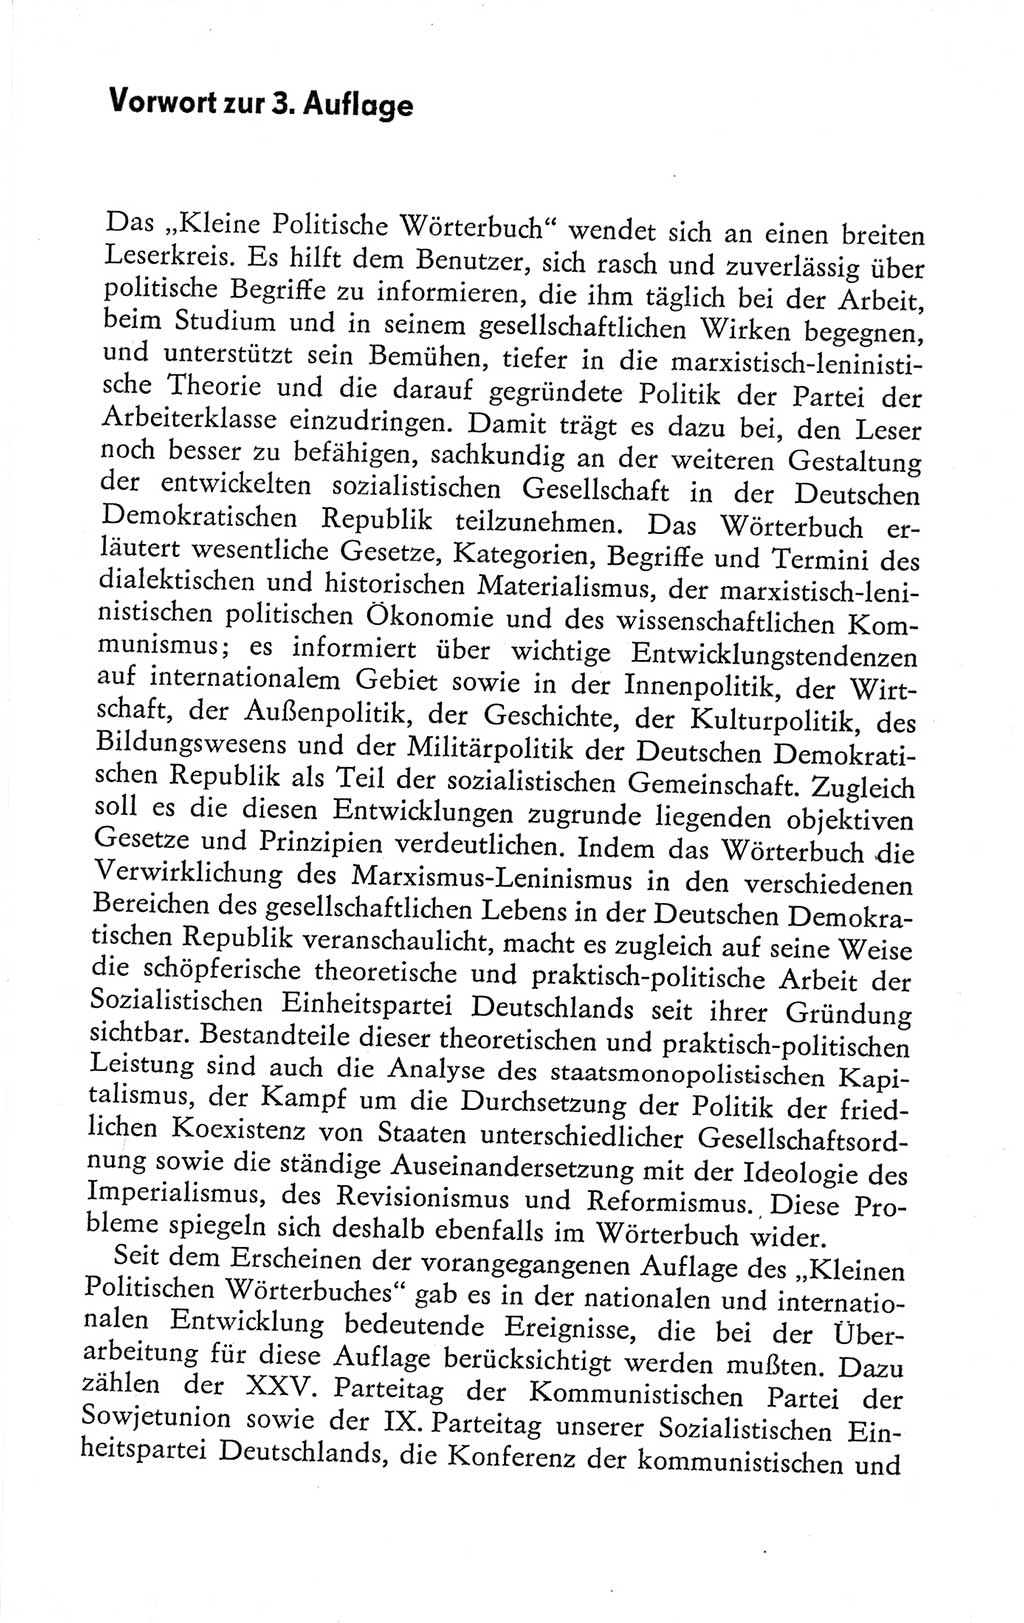 Kleines politisches Wörterbuch [Deutsche Demokratische Republik (DDR)] 1978, Seite 7 (Kl. pol. Wb. DDR 1978, S. 7)